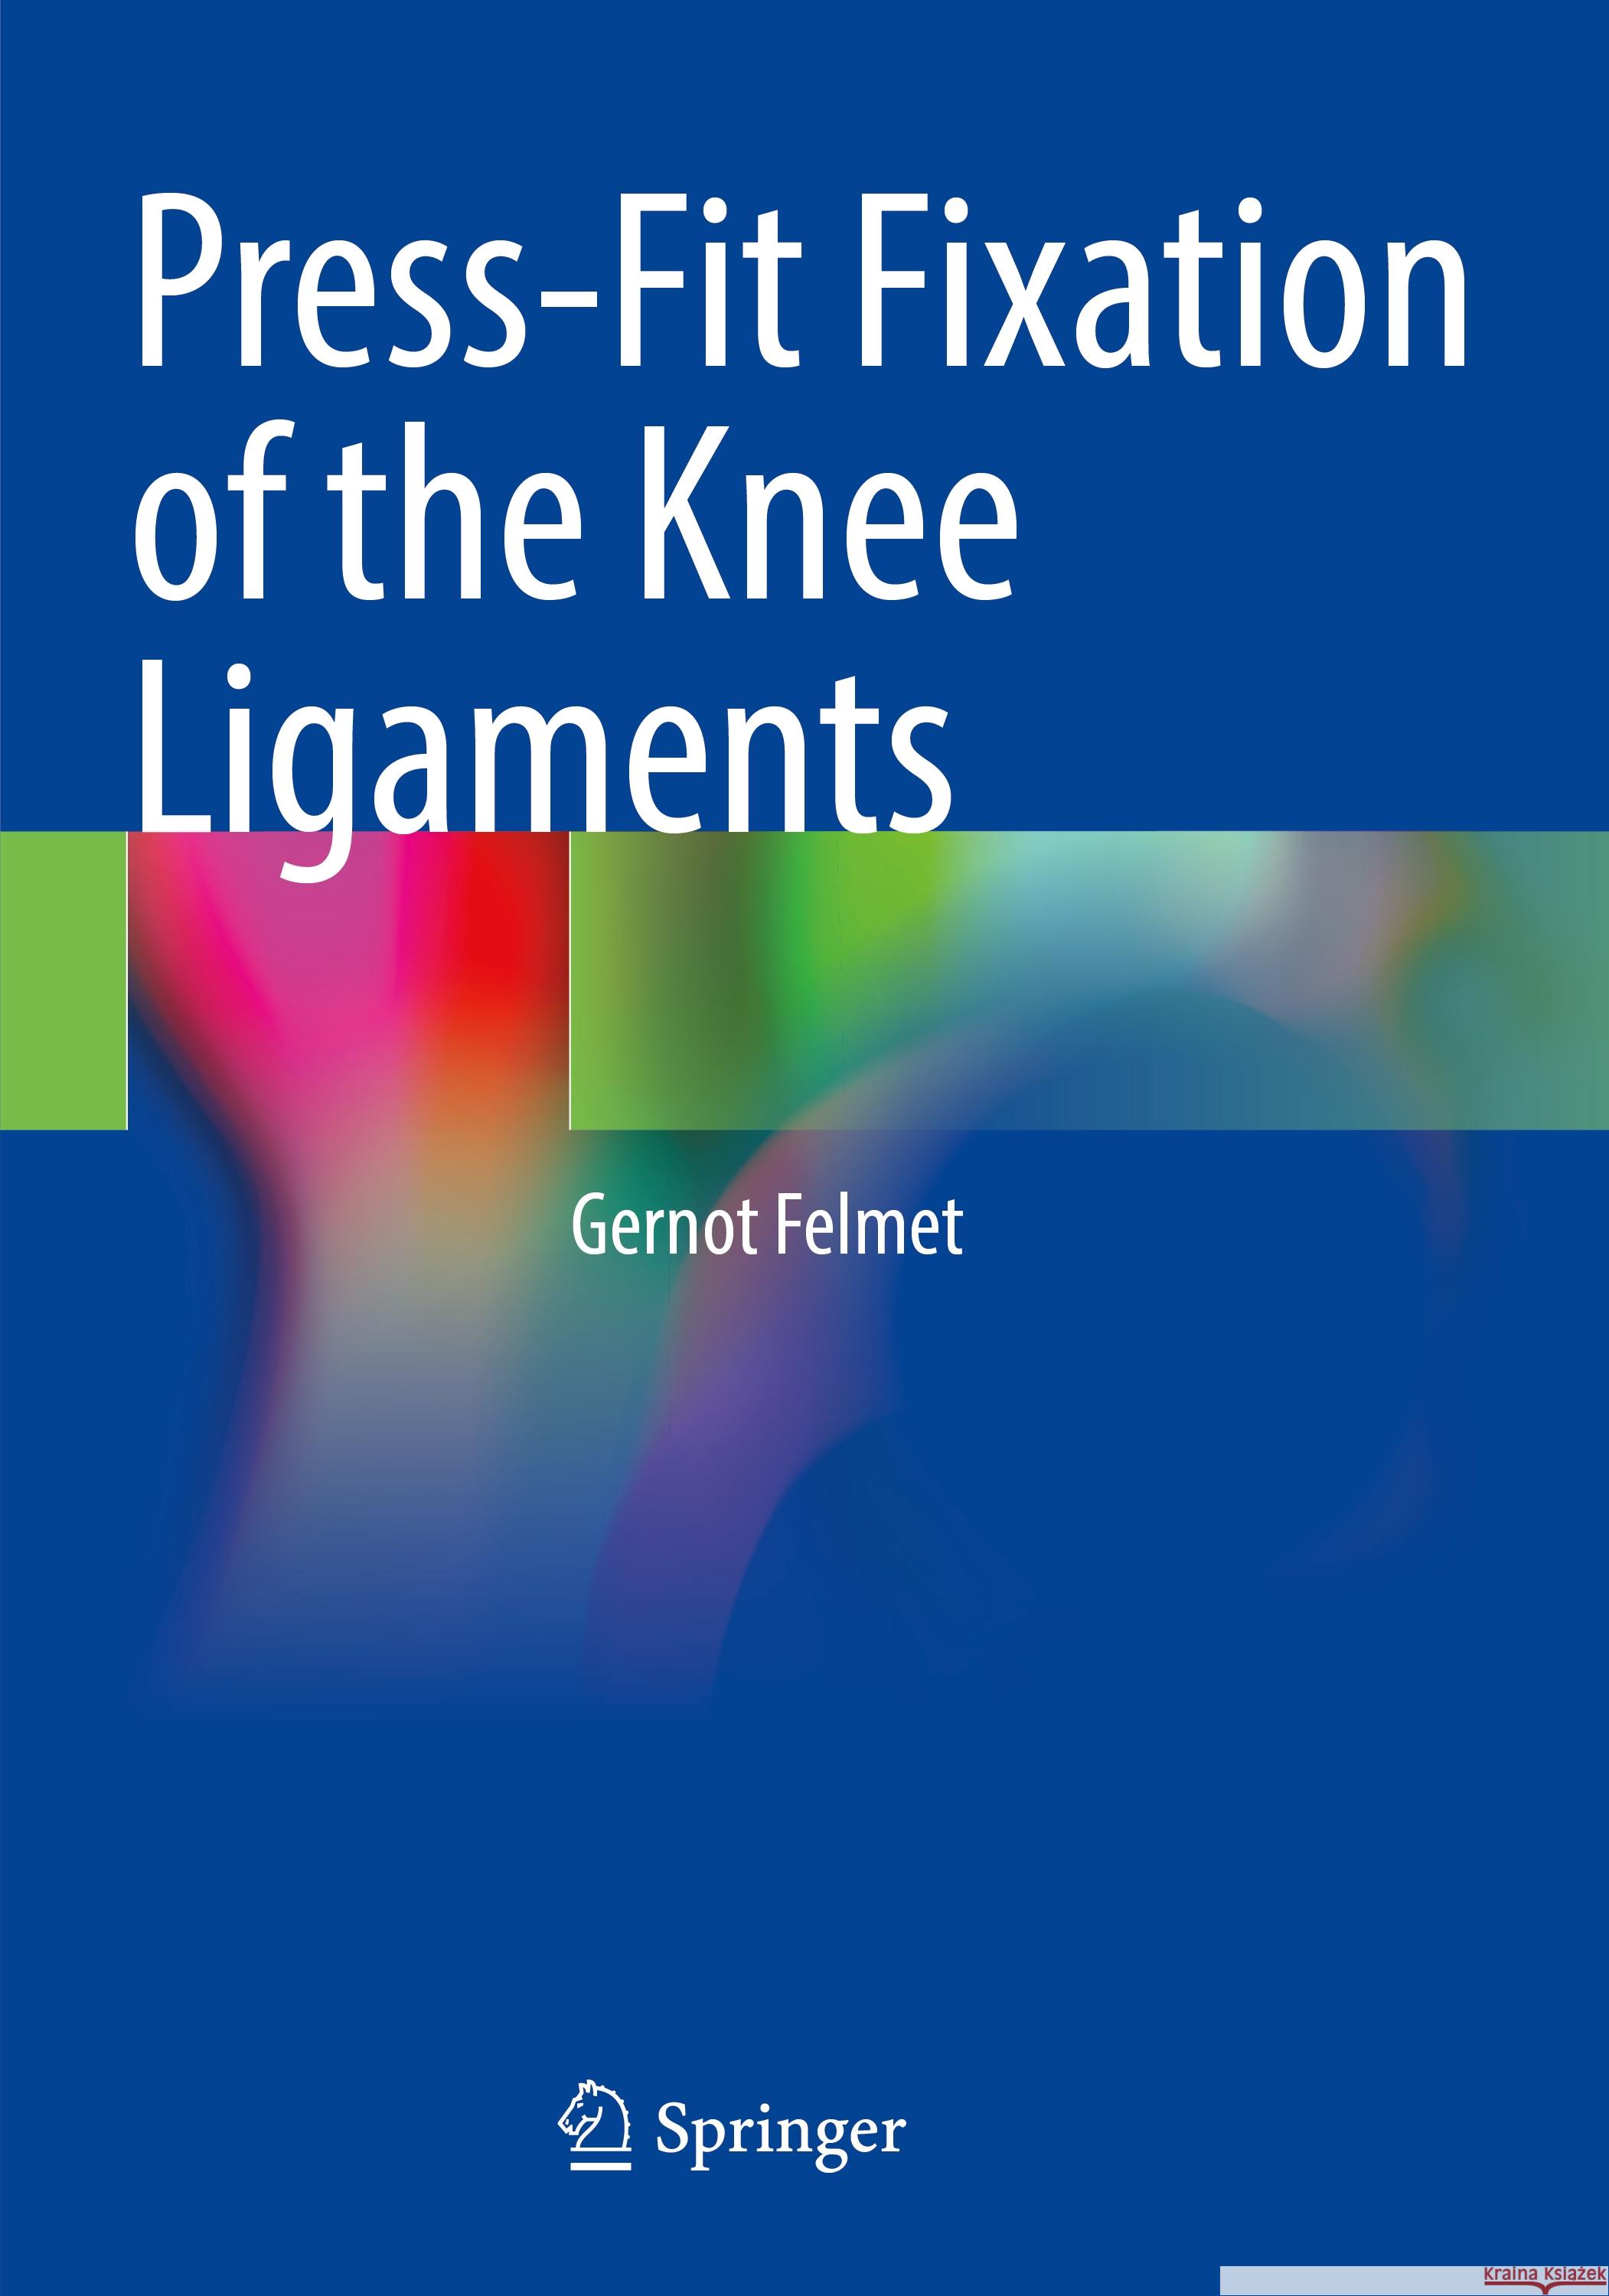 Press-Fit Fixation of the Knee Ligaments Gernot Felmet 9783031119088 Springer